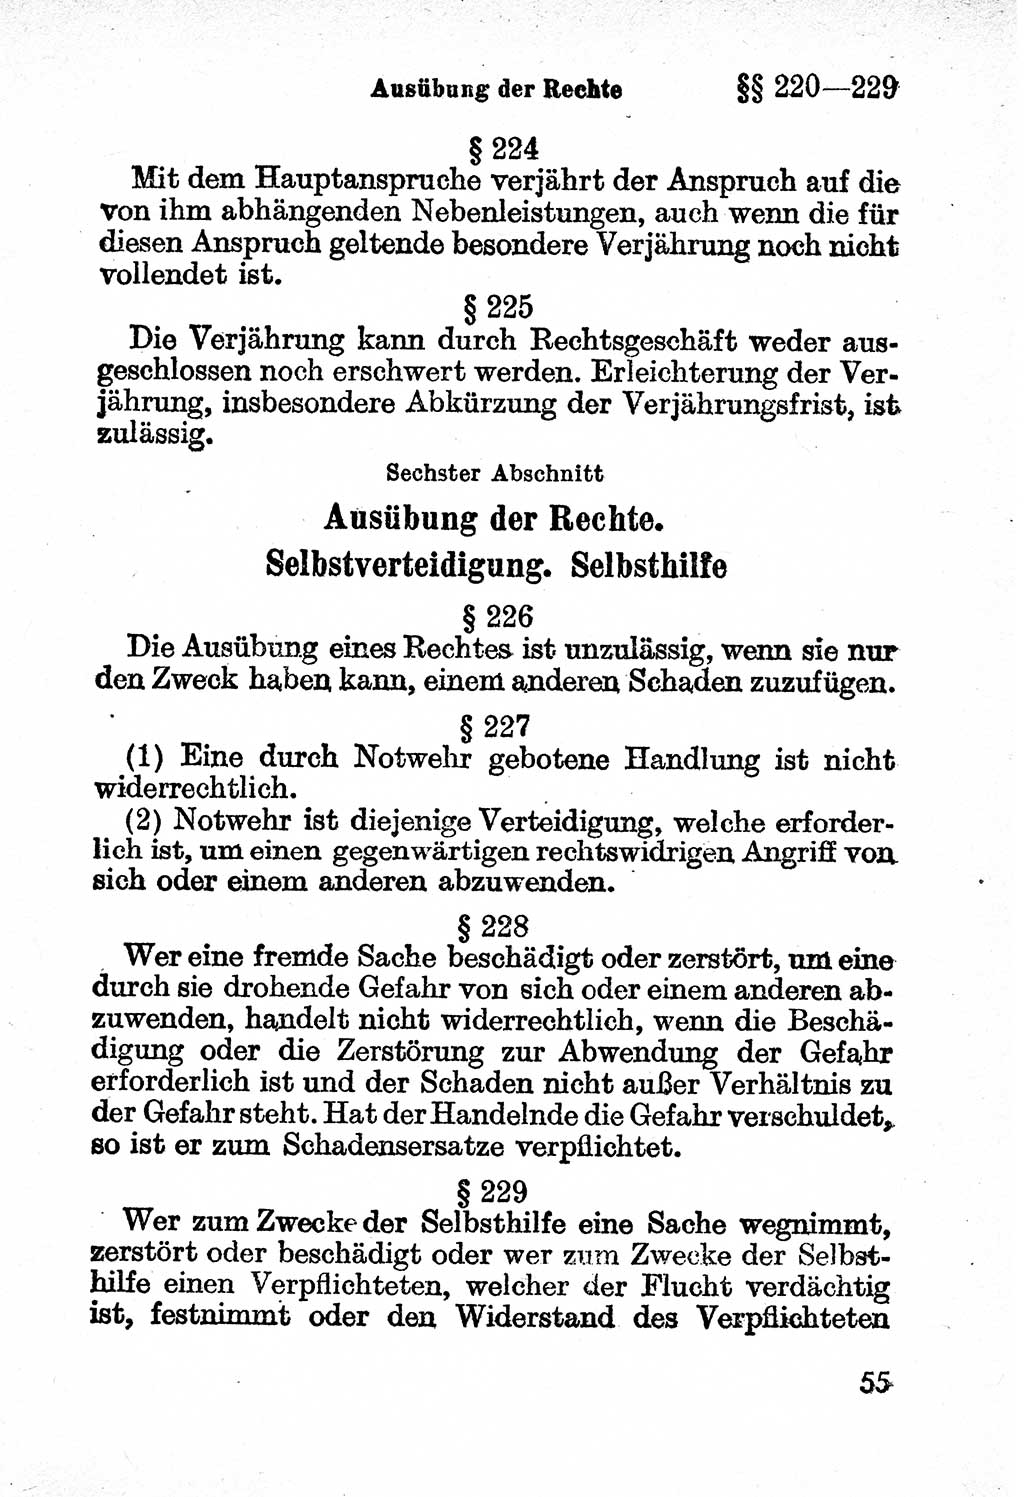 Bürgerliches Gesetzbuch (BGB) nebst wichtigen Nebengesetzen [Deutsche Demokratische Republik (DDR)] 1956, Seite 55 (BGB Nebenges. DDR 1956, S. 55)